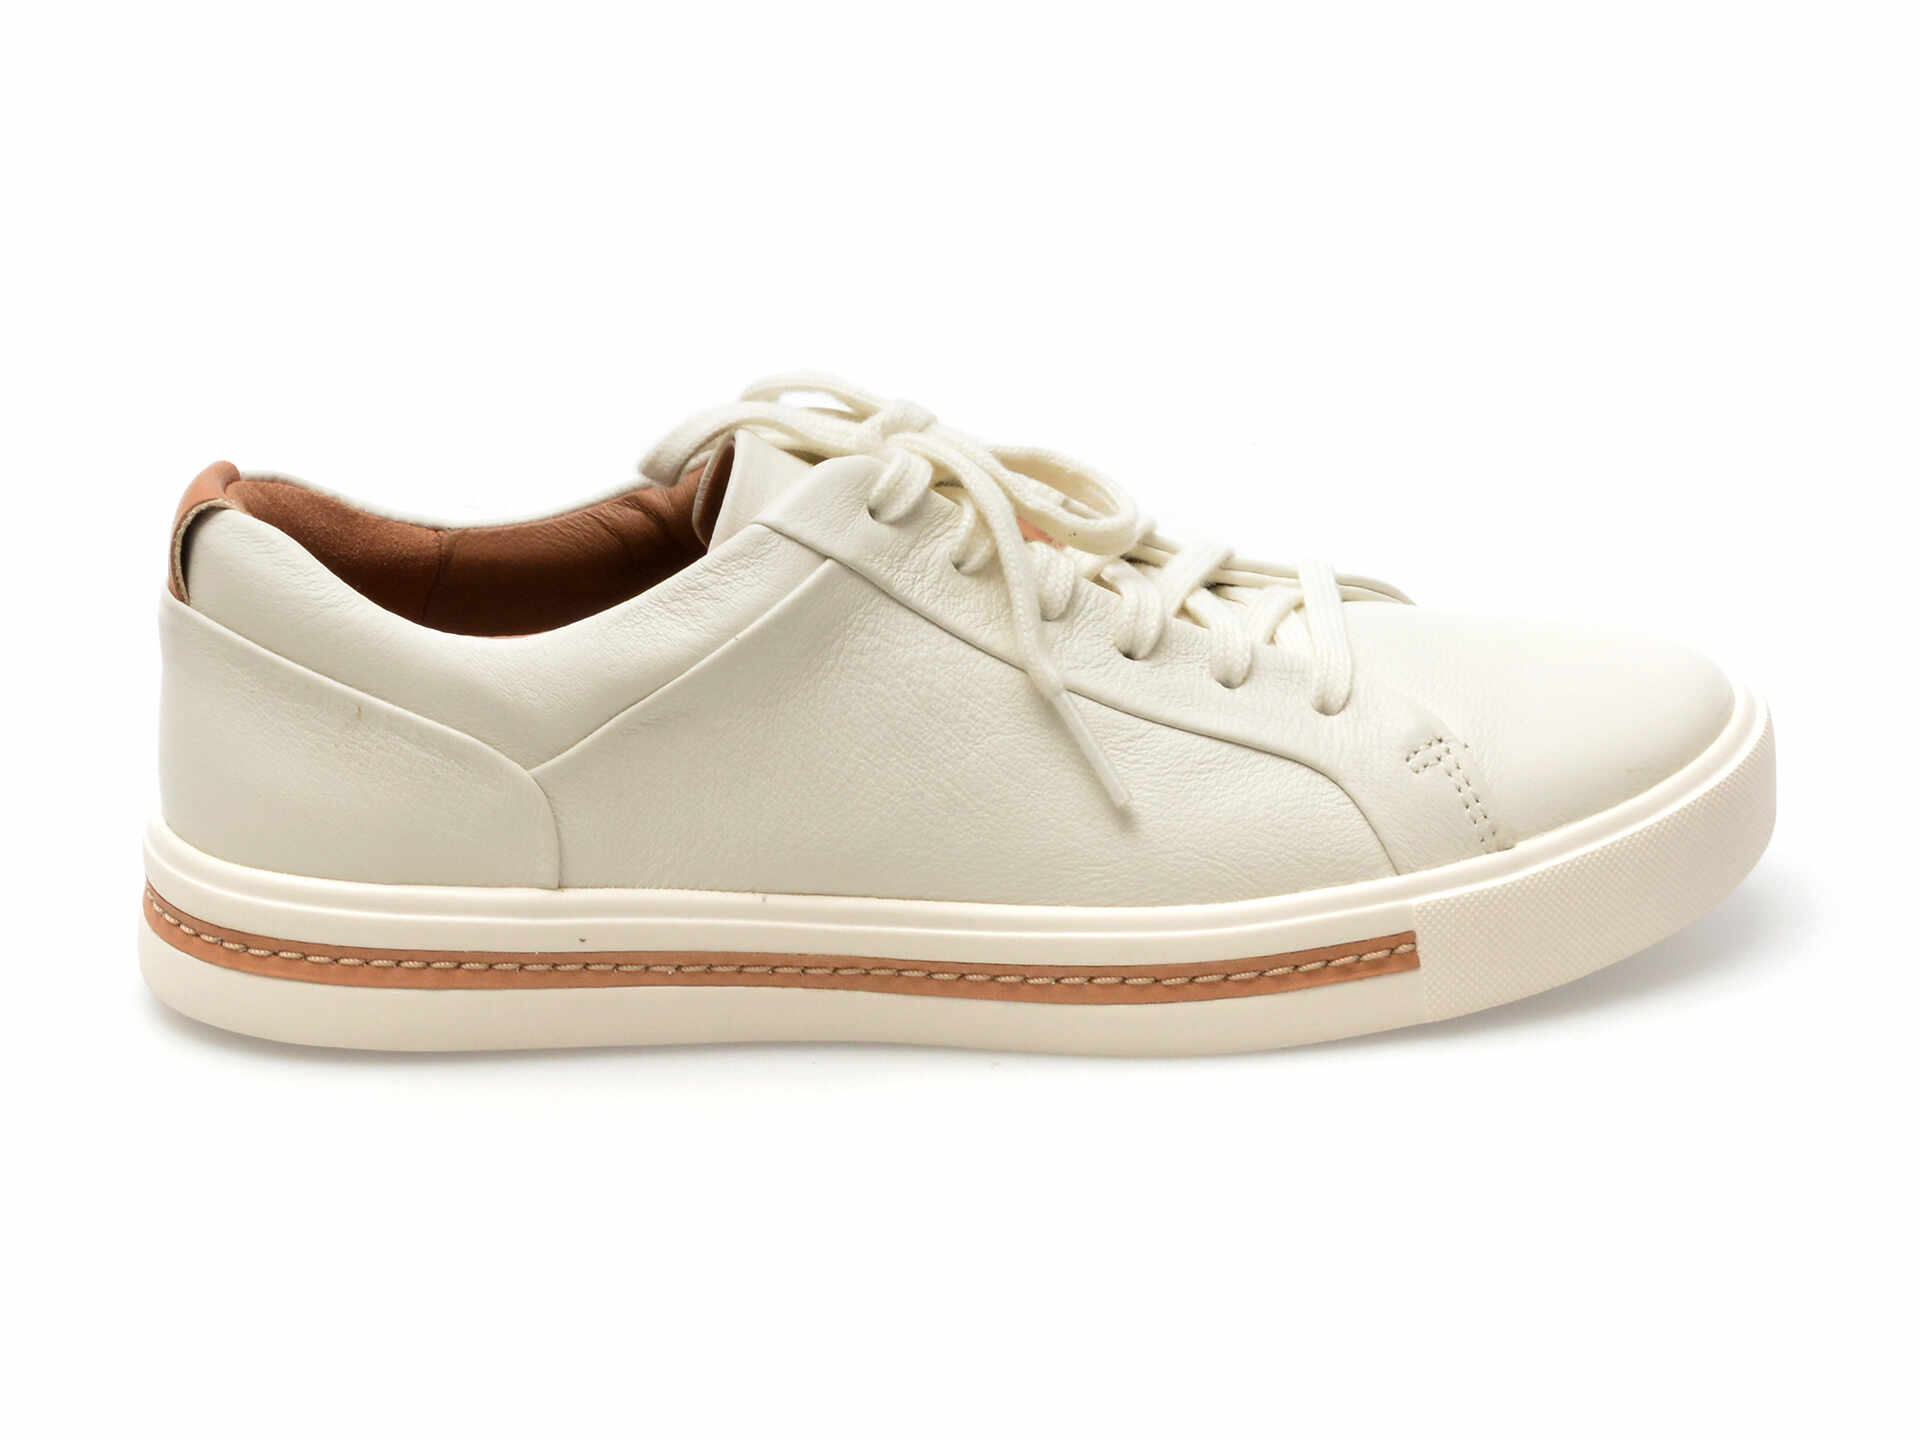 Pantofi CLARKS albi, UN MAUI LACE, din piele naturala